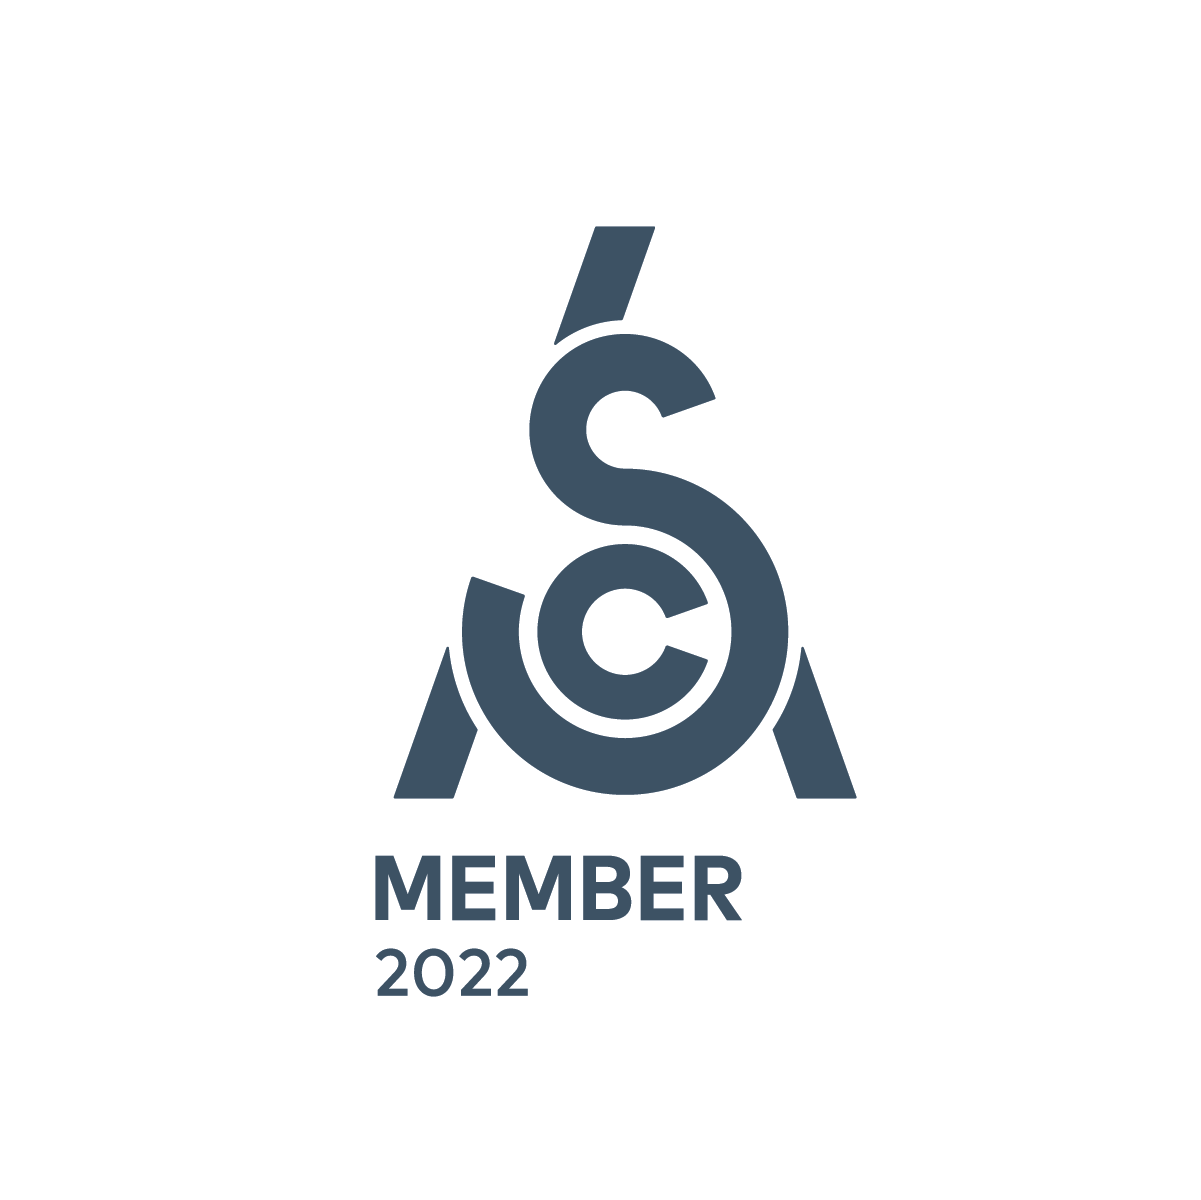 Sca member logo